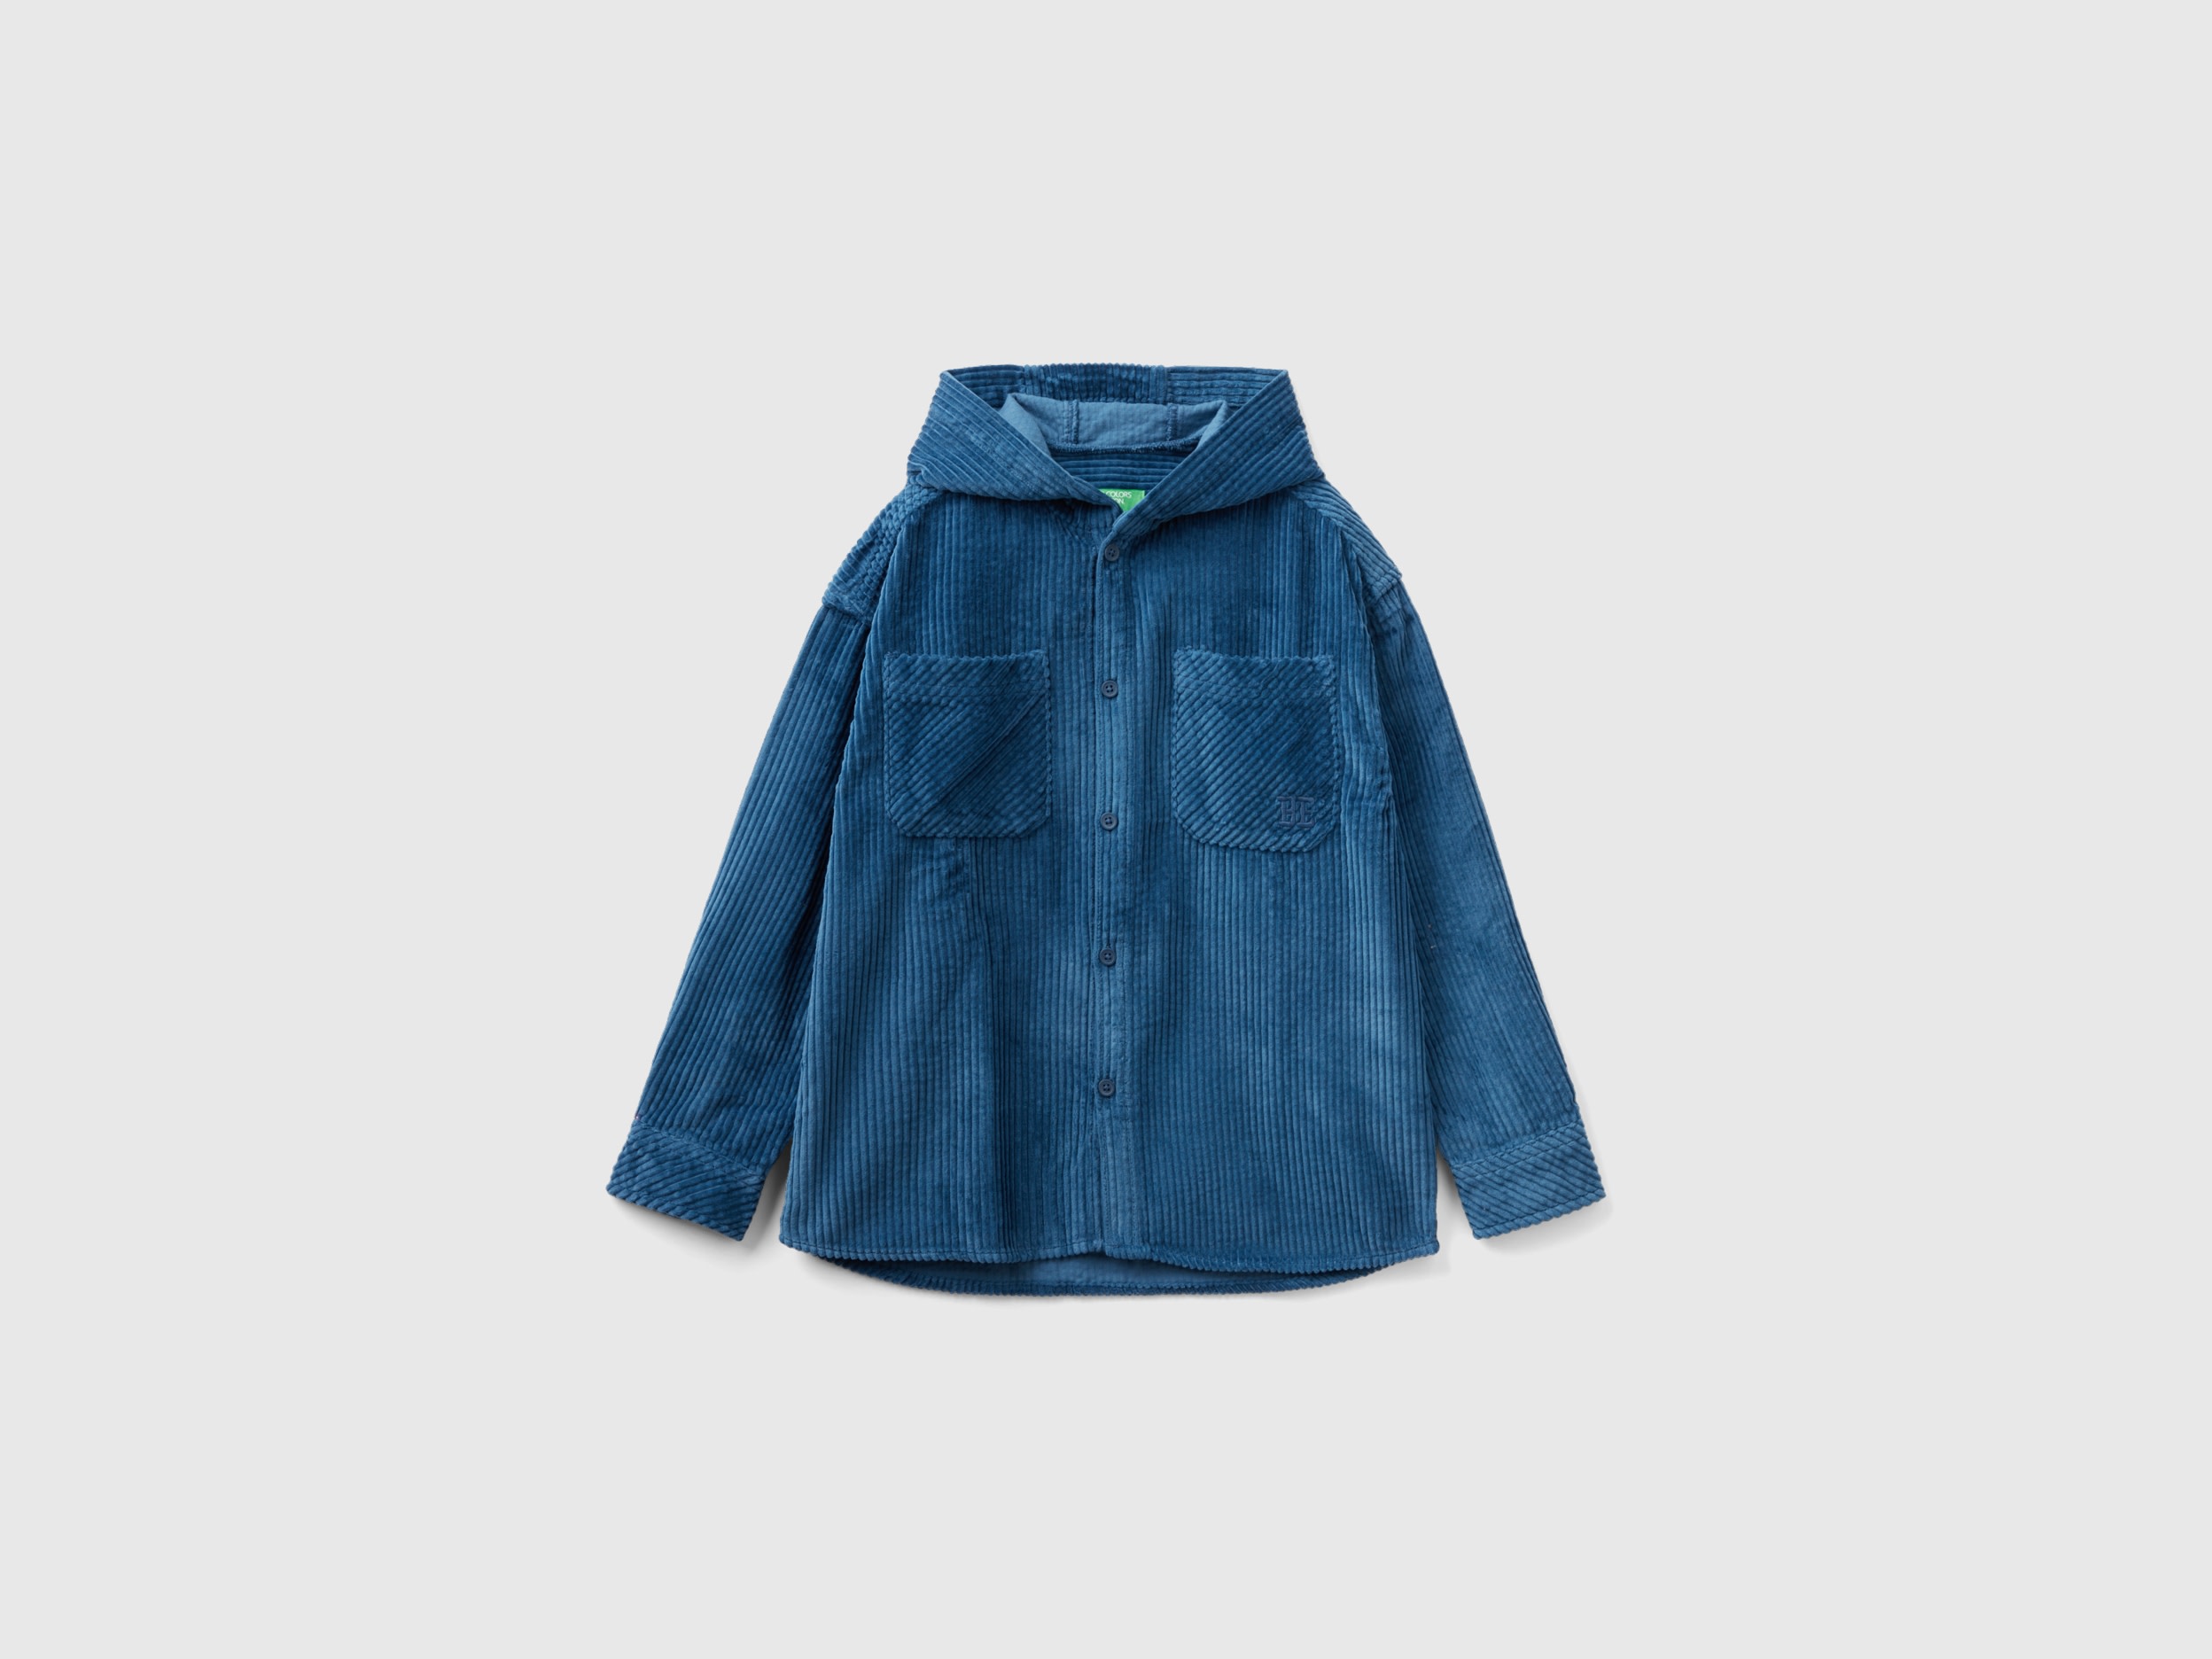 Benetton, Velvet Shirt With Hood, size 3XL, Air Force Blue, Kids